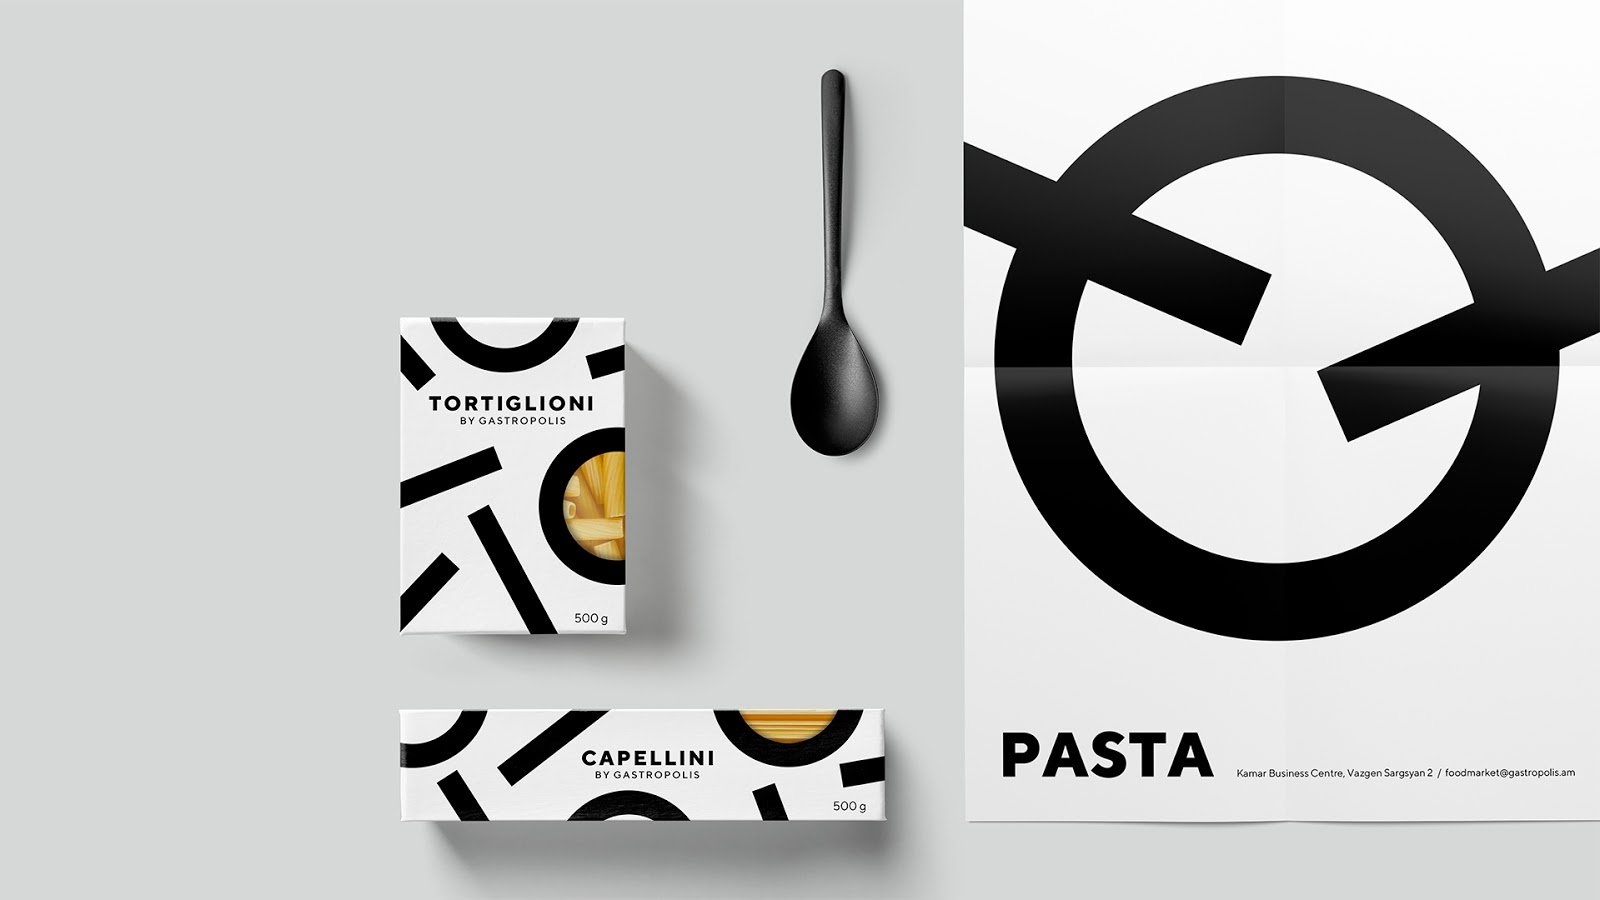 快餐简餐甜品面包咖啡西安四喜品牌策划包装设计VI设计logo设计